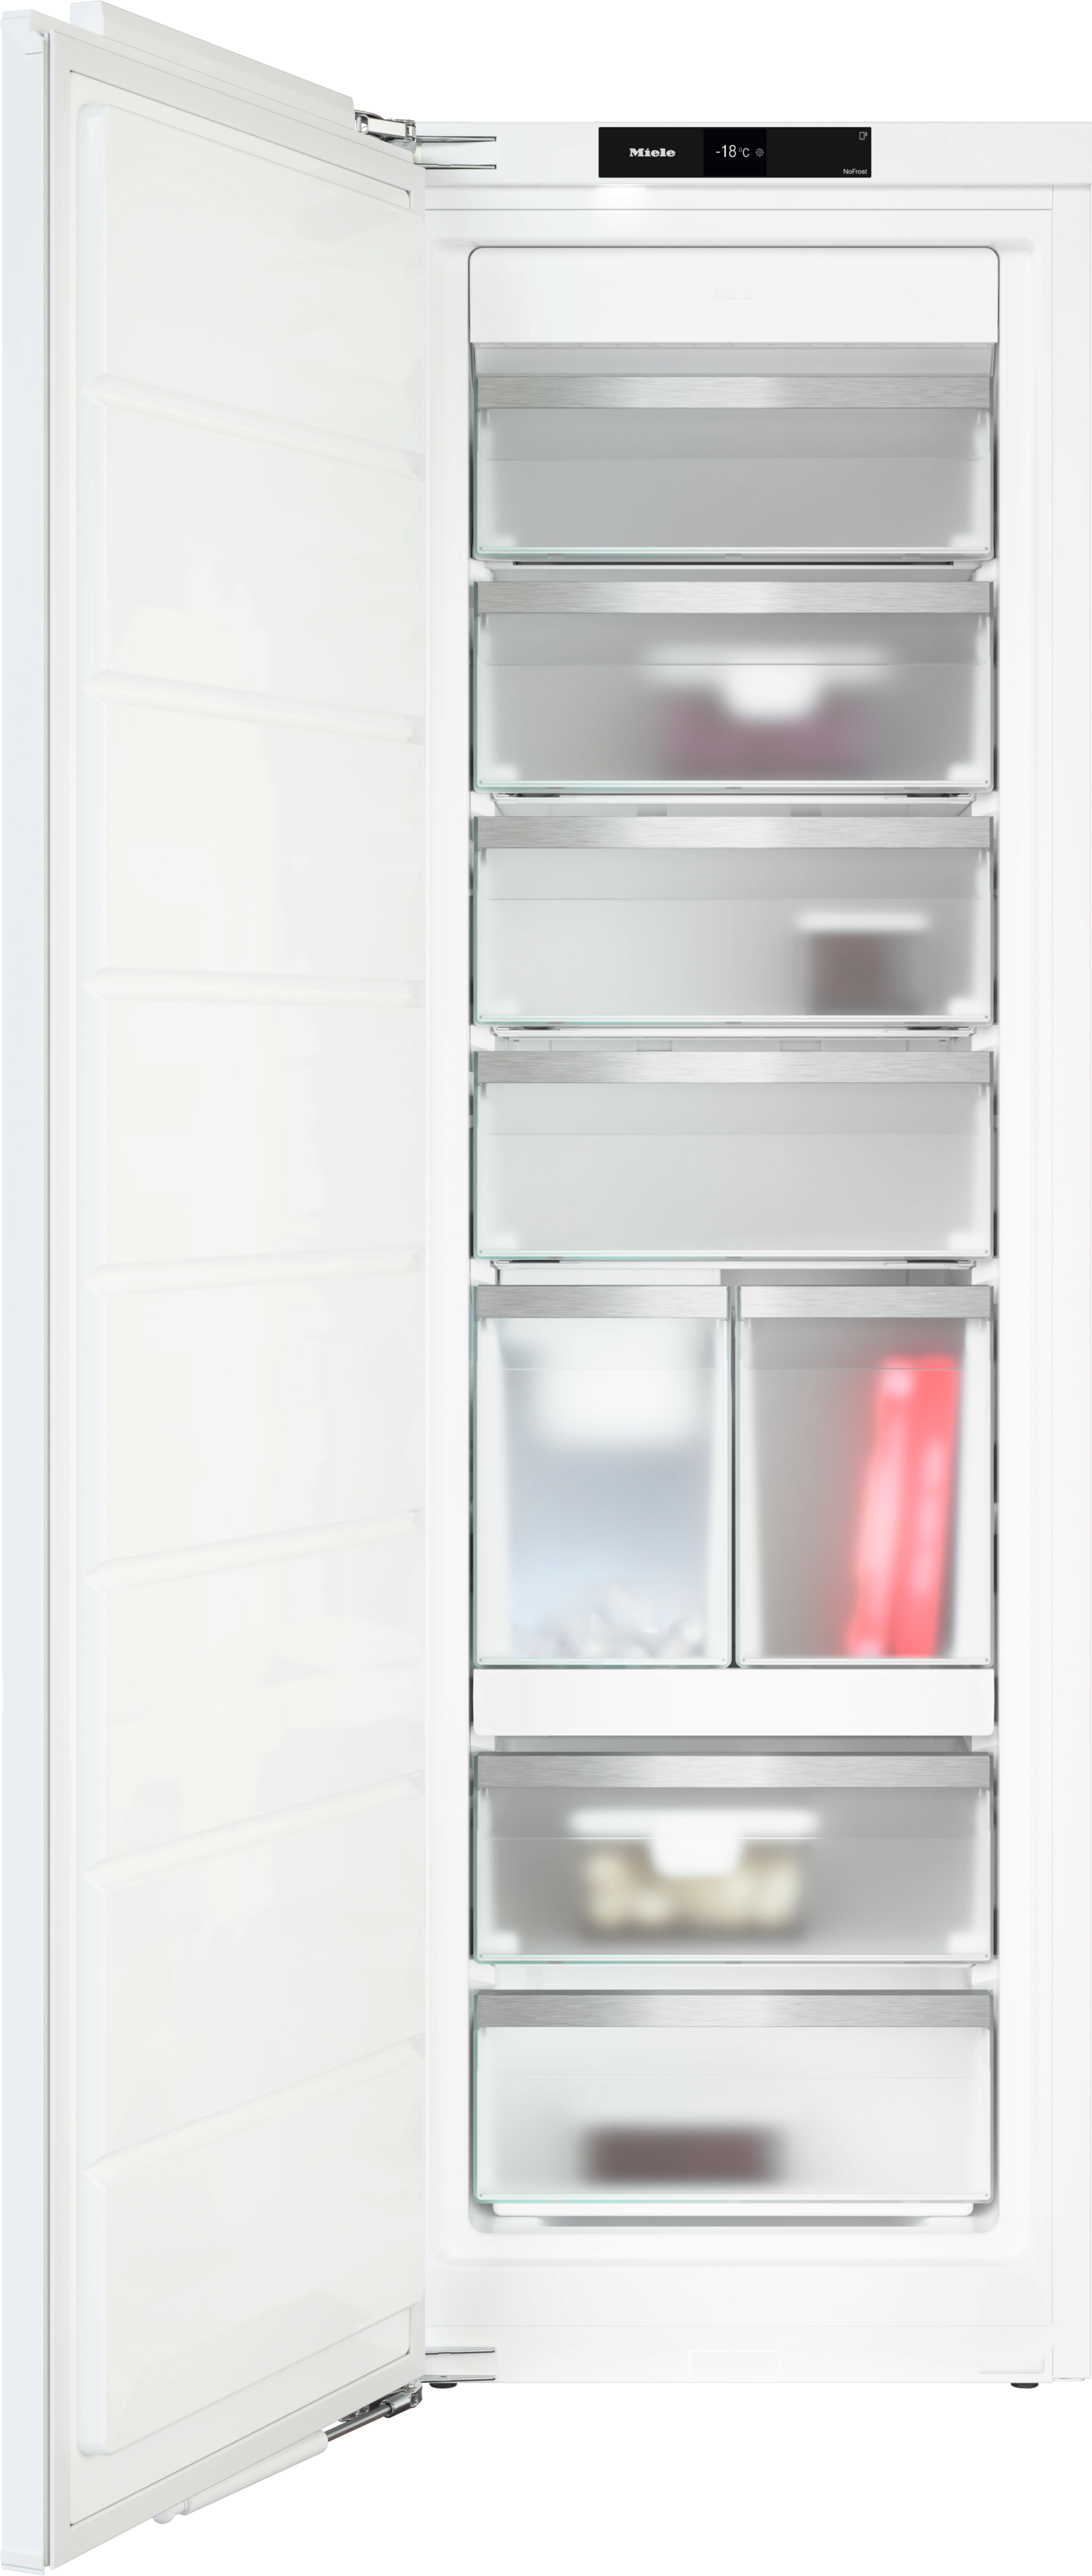 Refrigeration - FNS 7794 E - 1